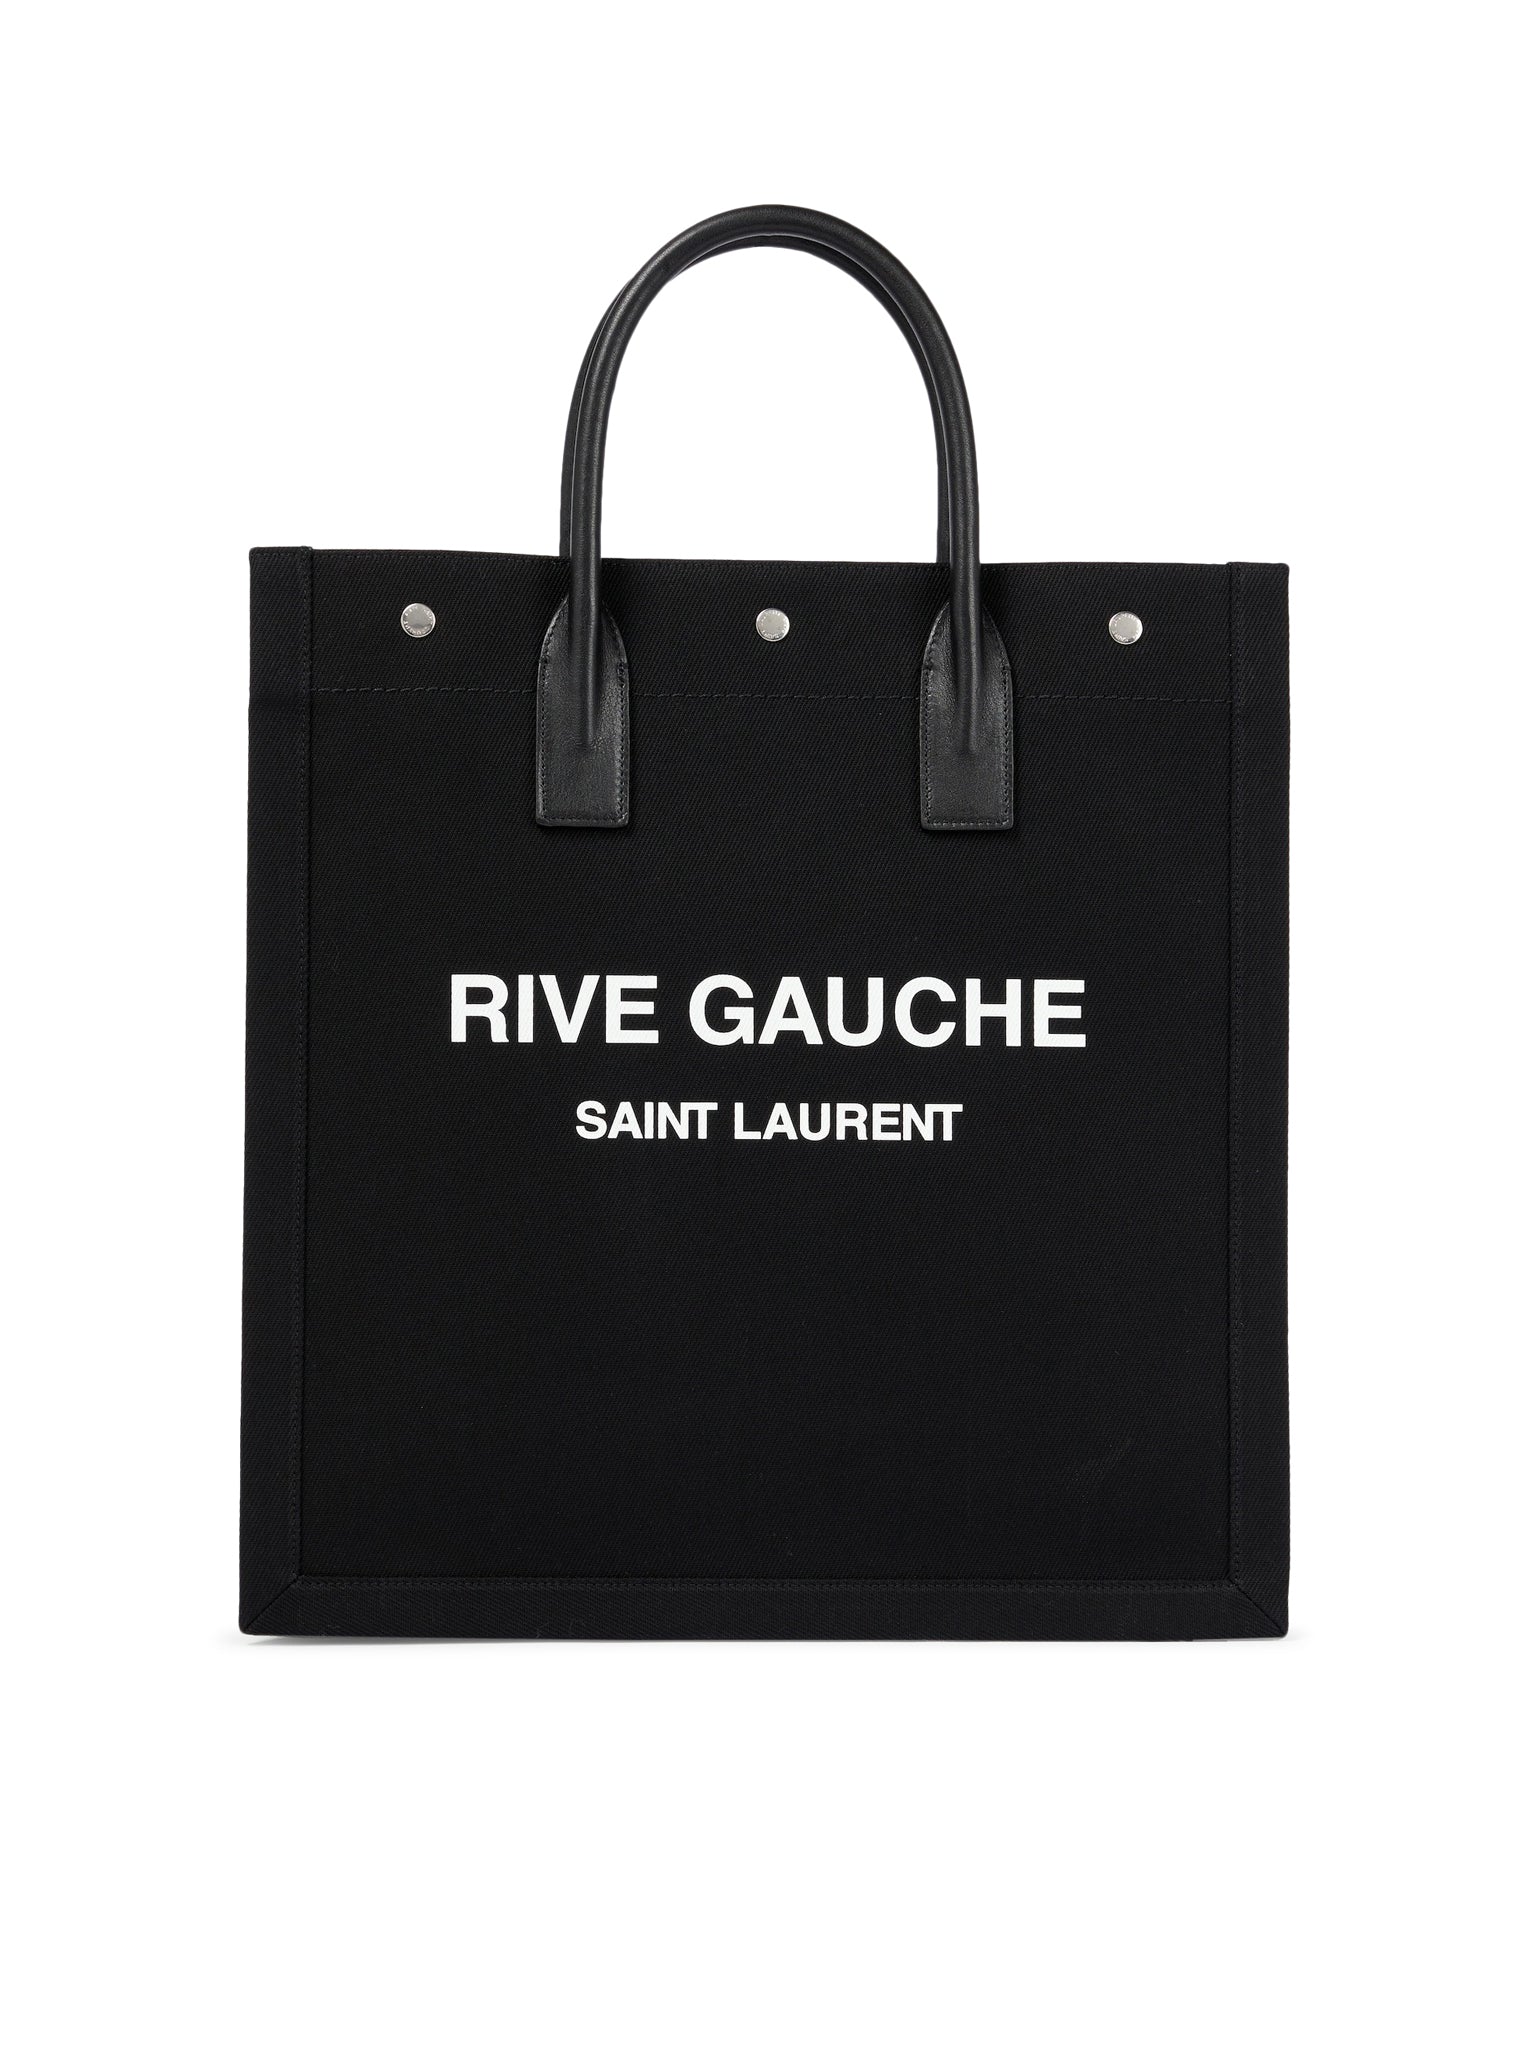 RIVE GAUCHE N/S CANVAS TOTE BAG